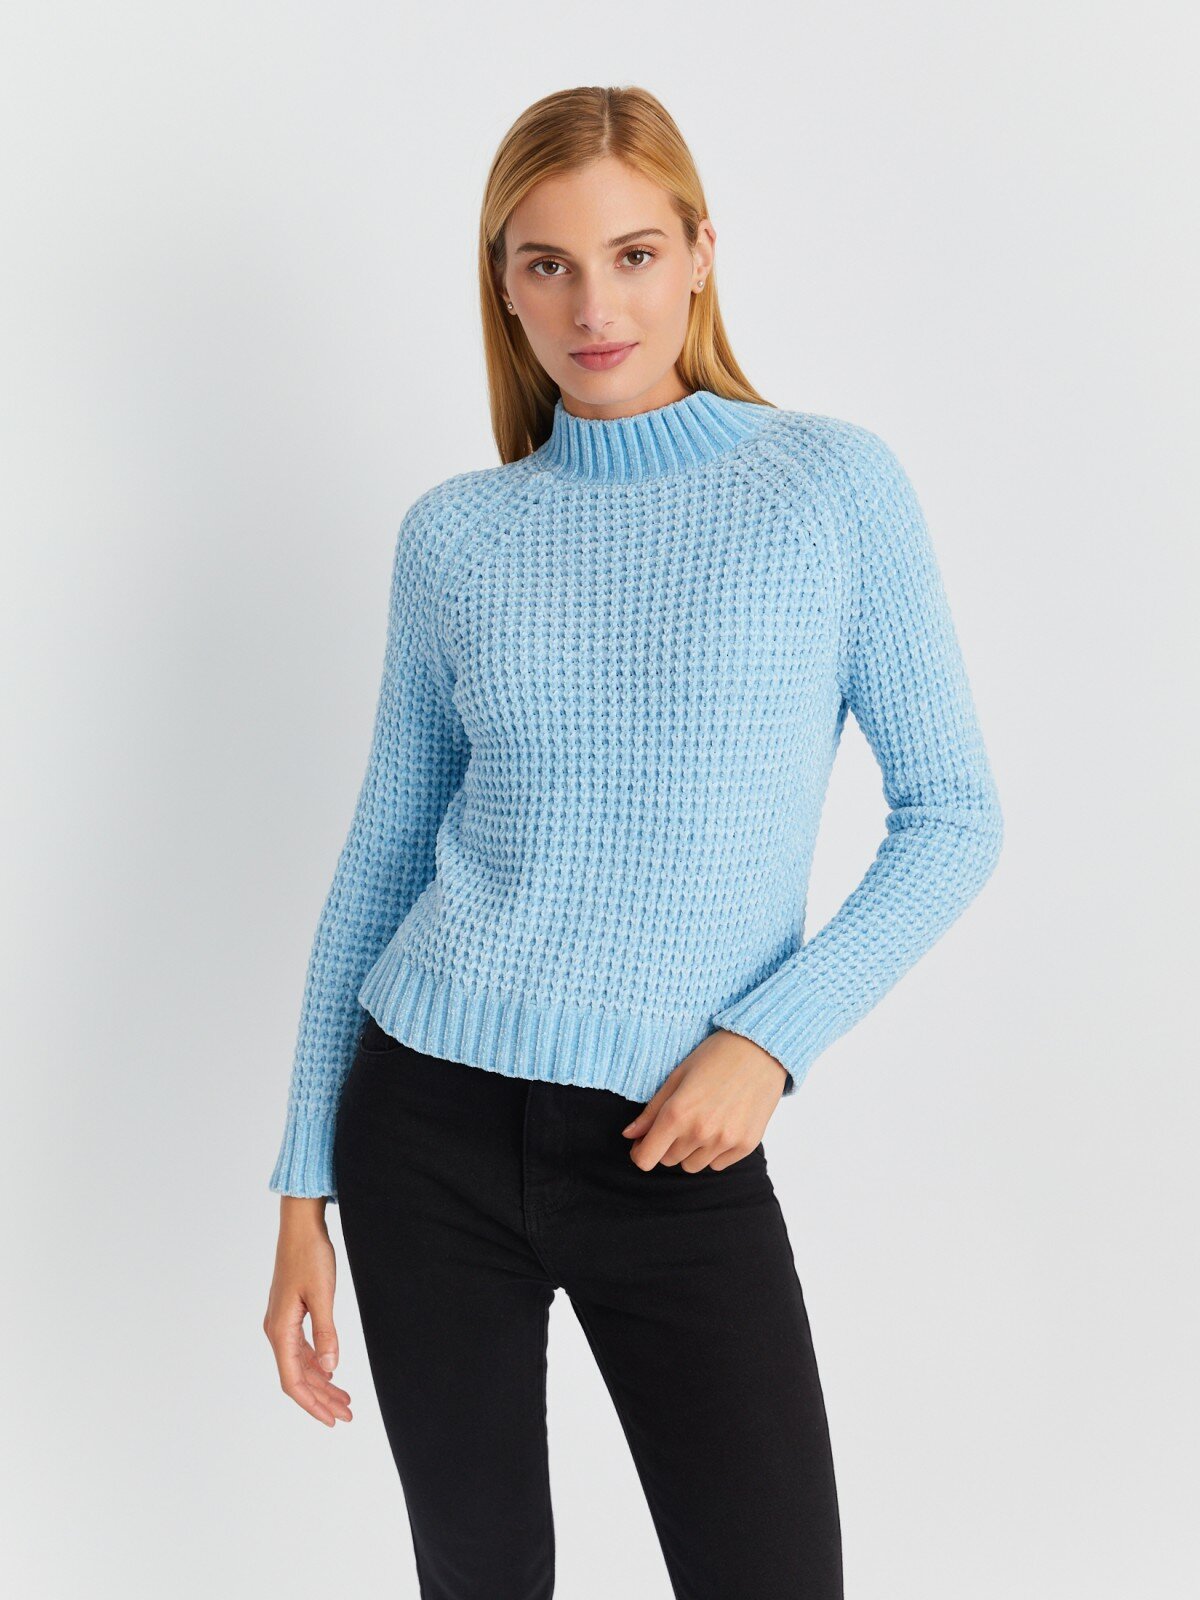 Вязаный свитер из бархатистой пряжи с воротником-стойкой цвет Светло-голубой размер S